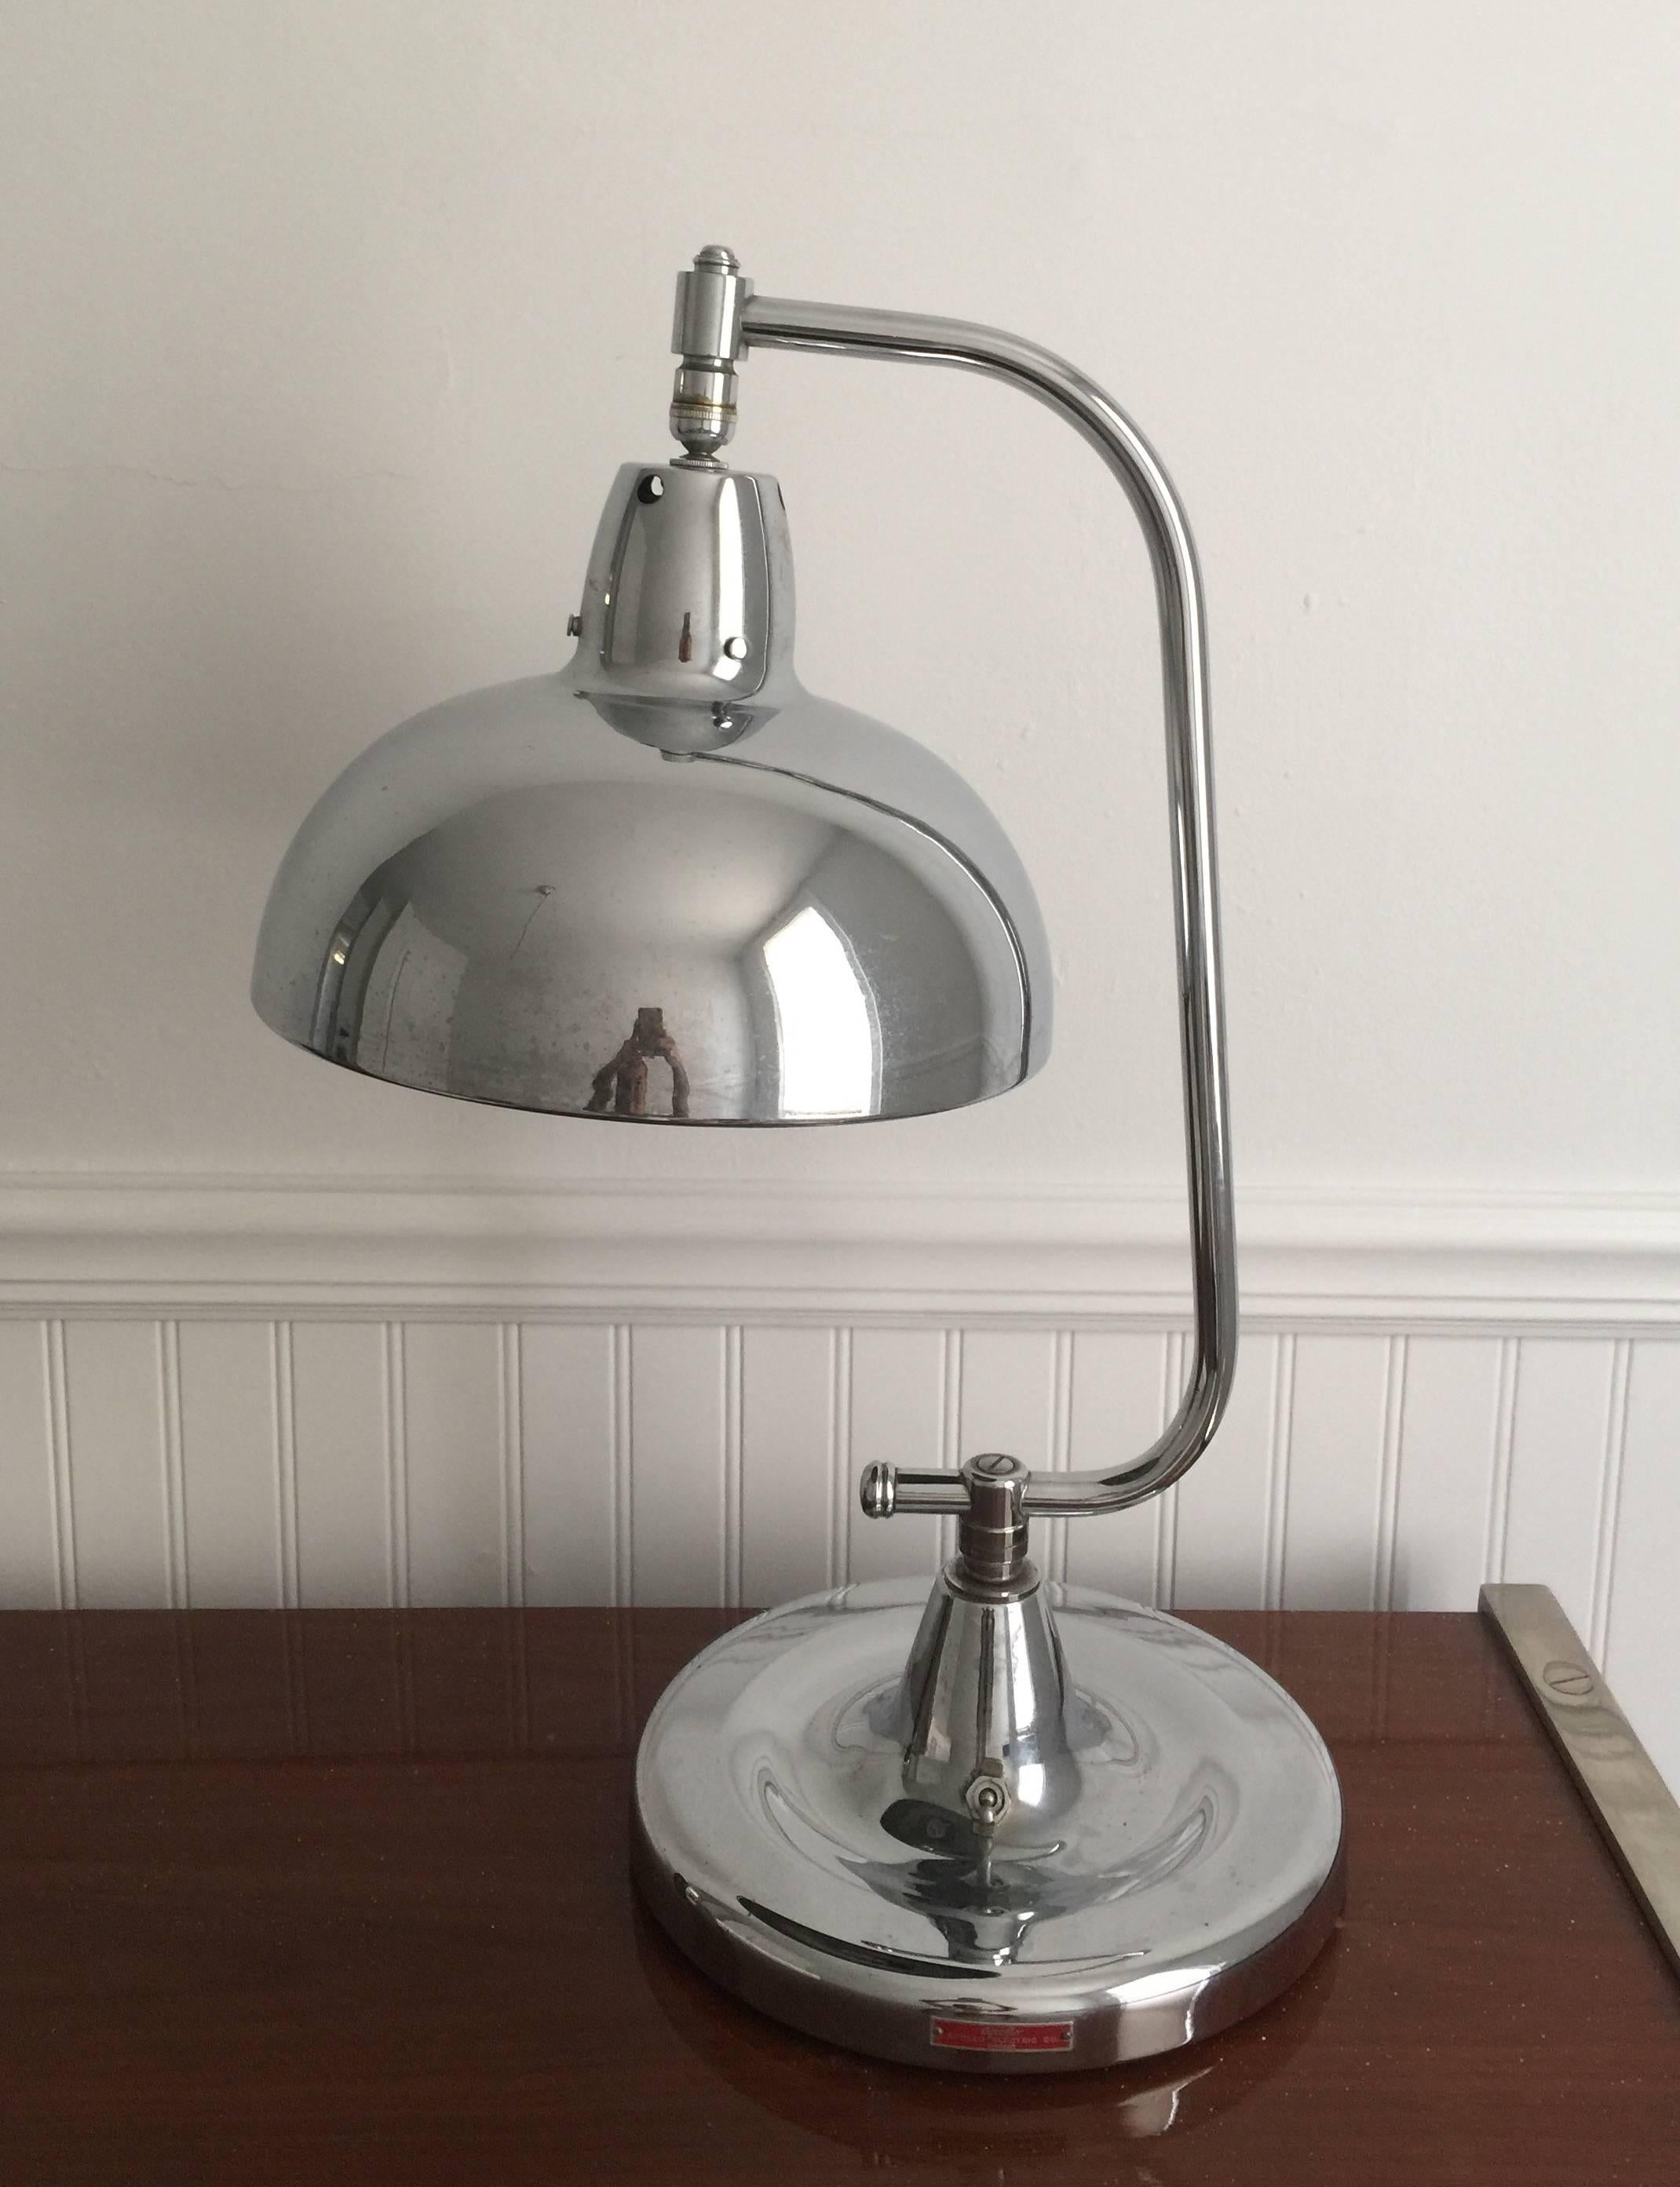 Lampe de bijoutier en chrome poli, avec abat-jour réglable et base pivotante, USA, vers 1940. Signé.

Dimensions :
hauteur de 22 pouces
10.base de 5 pouces.